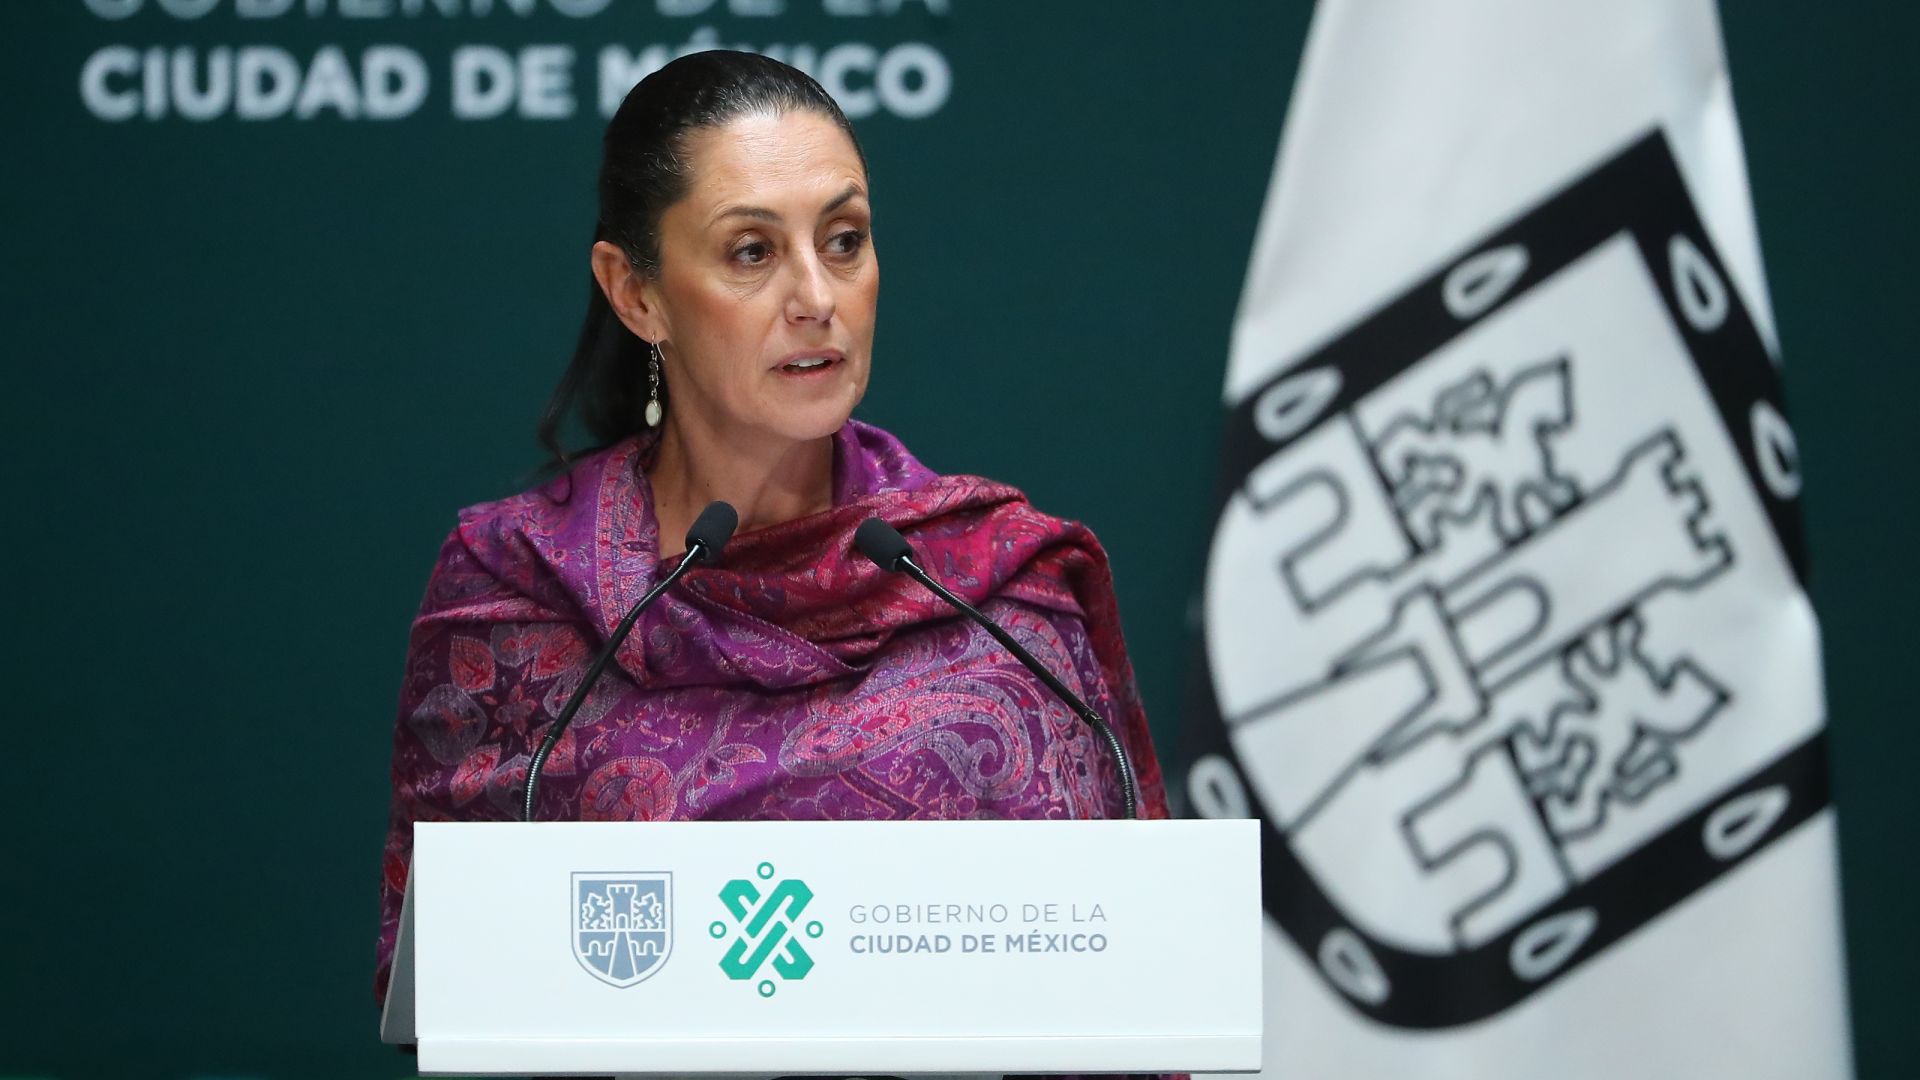 Първата жена кмет на Мексико Сити е с български корени